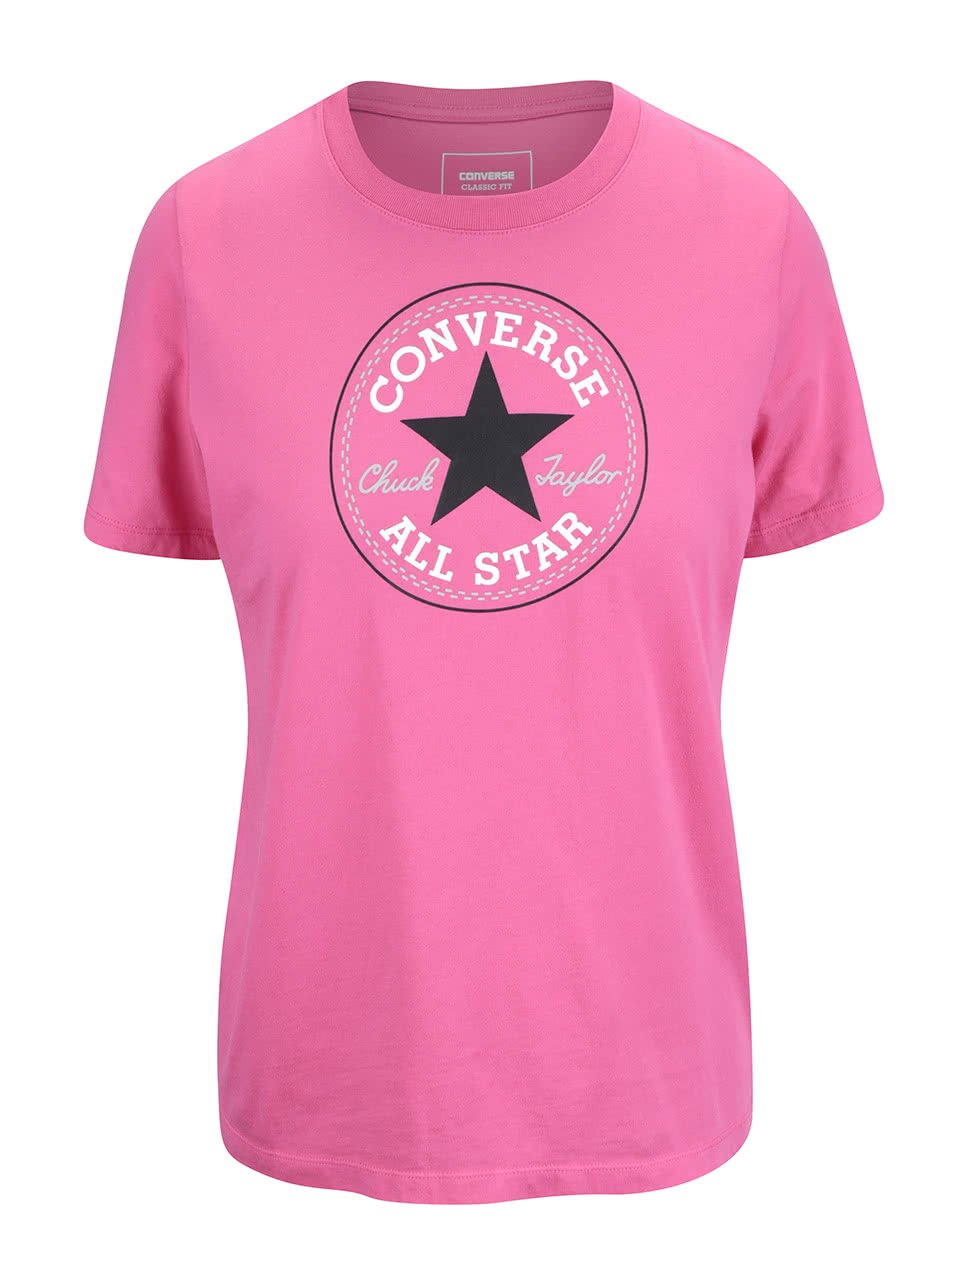 Růžové dámské tričko s logem Converse